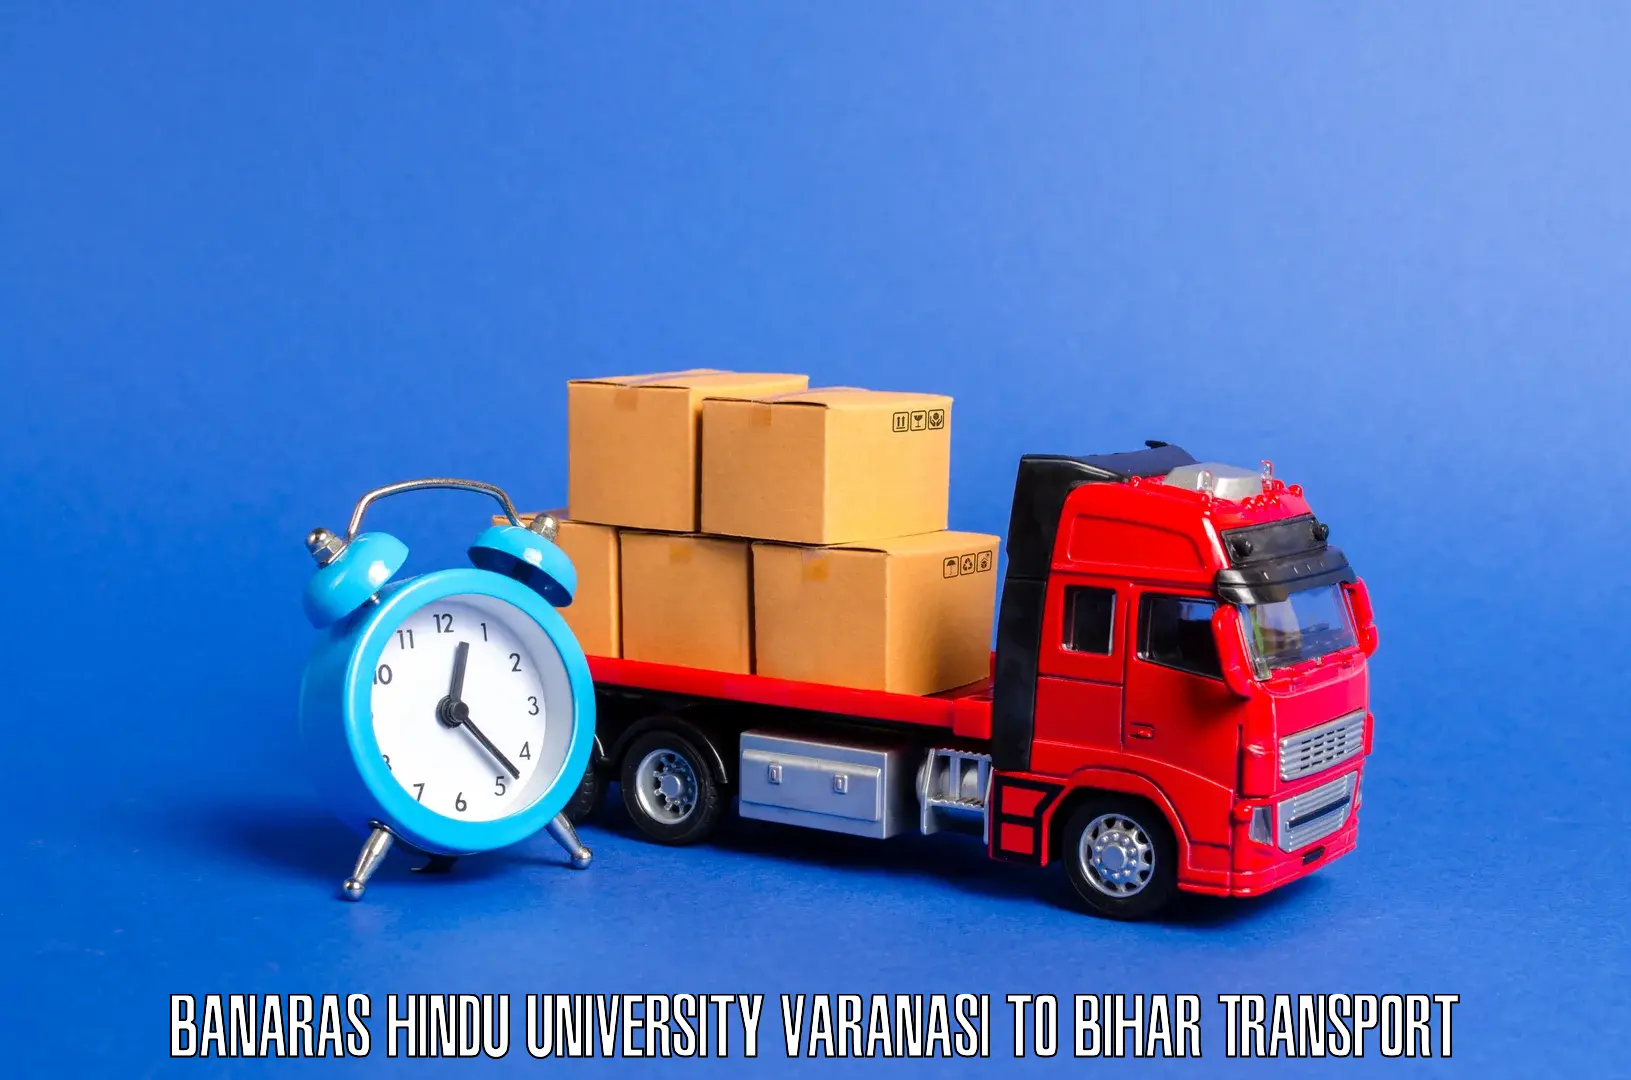 Material transport services Banaras Hindu University Varanasi to Samastipur